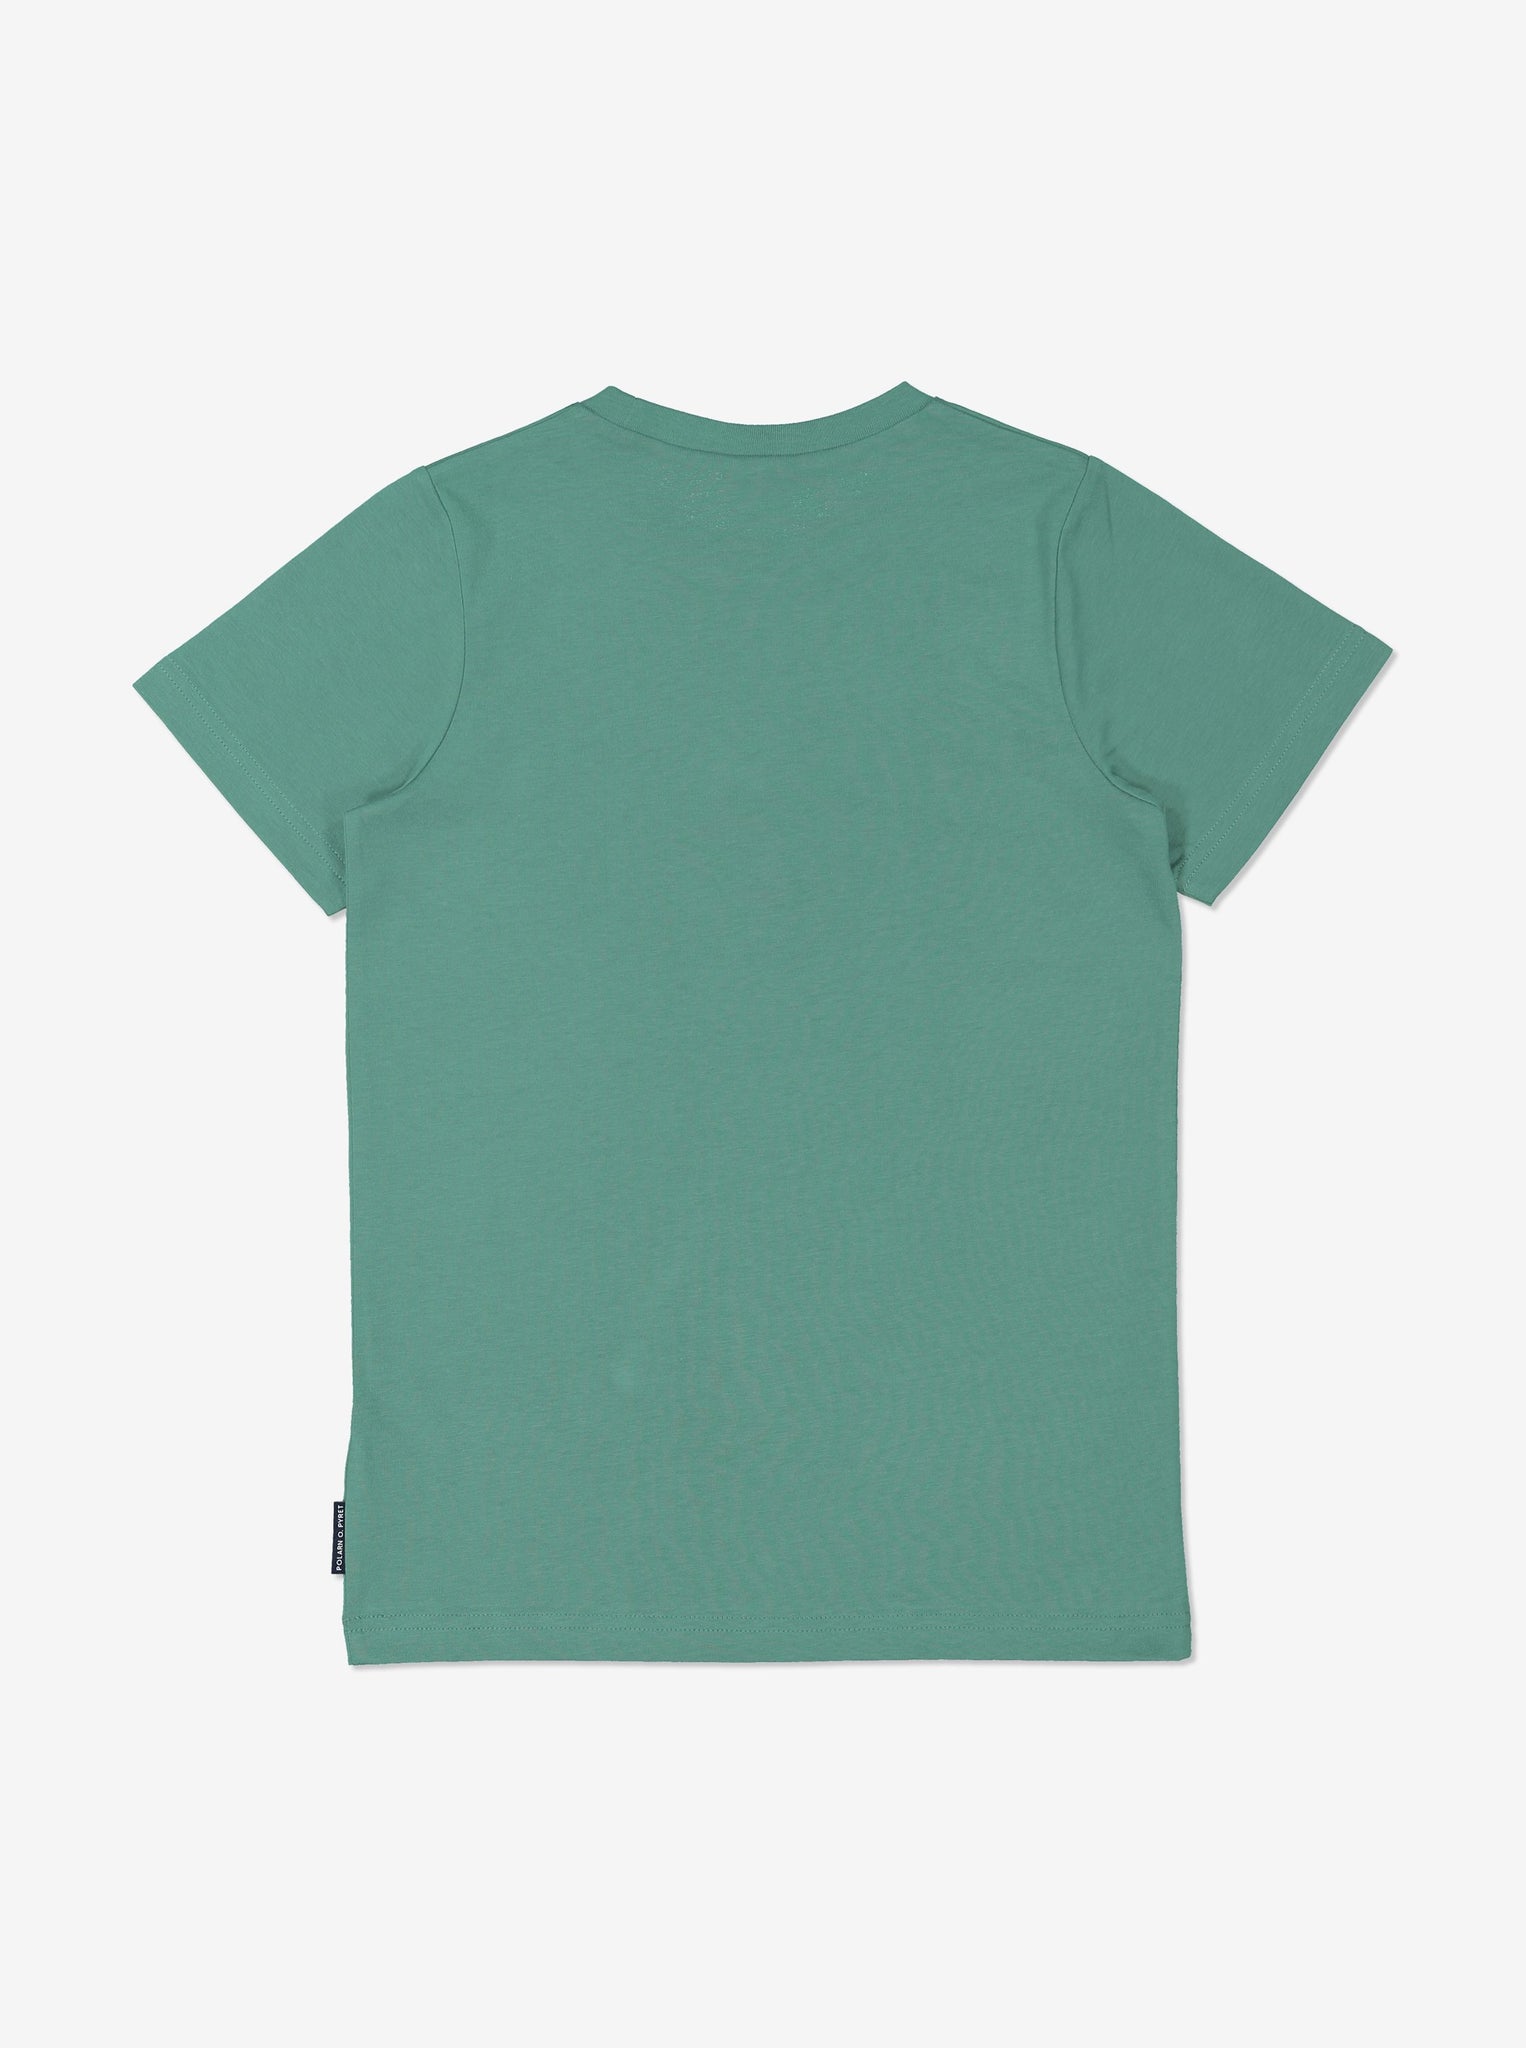 Boys Organic Green T-Shirt